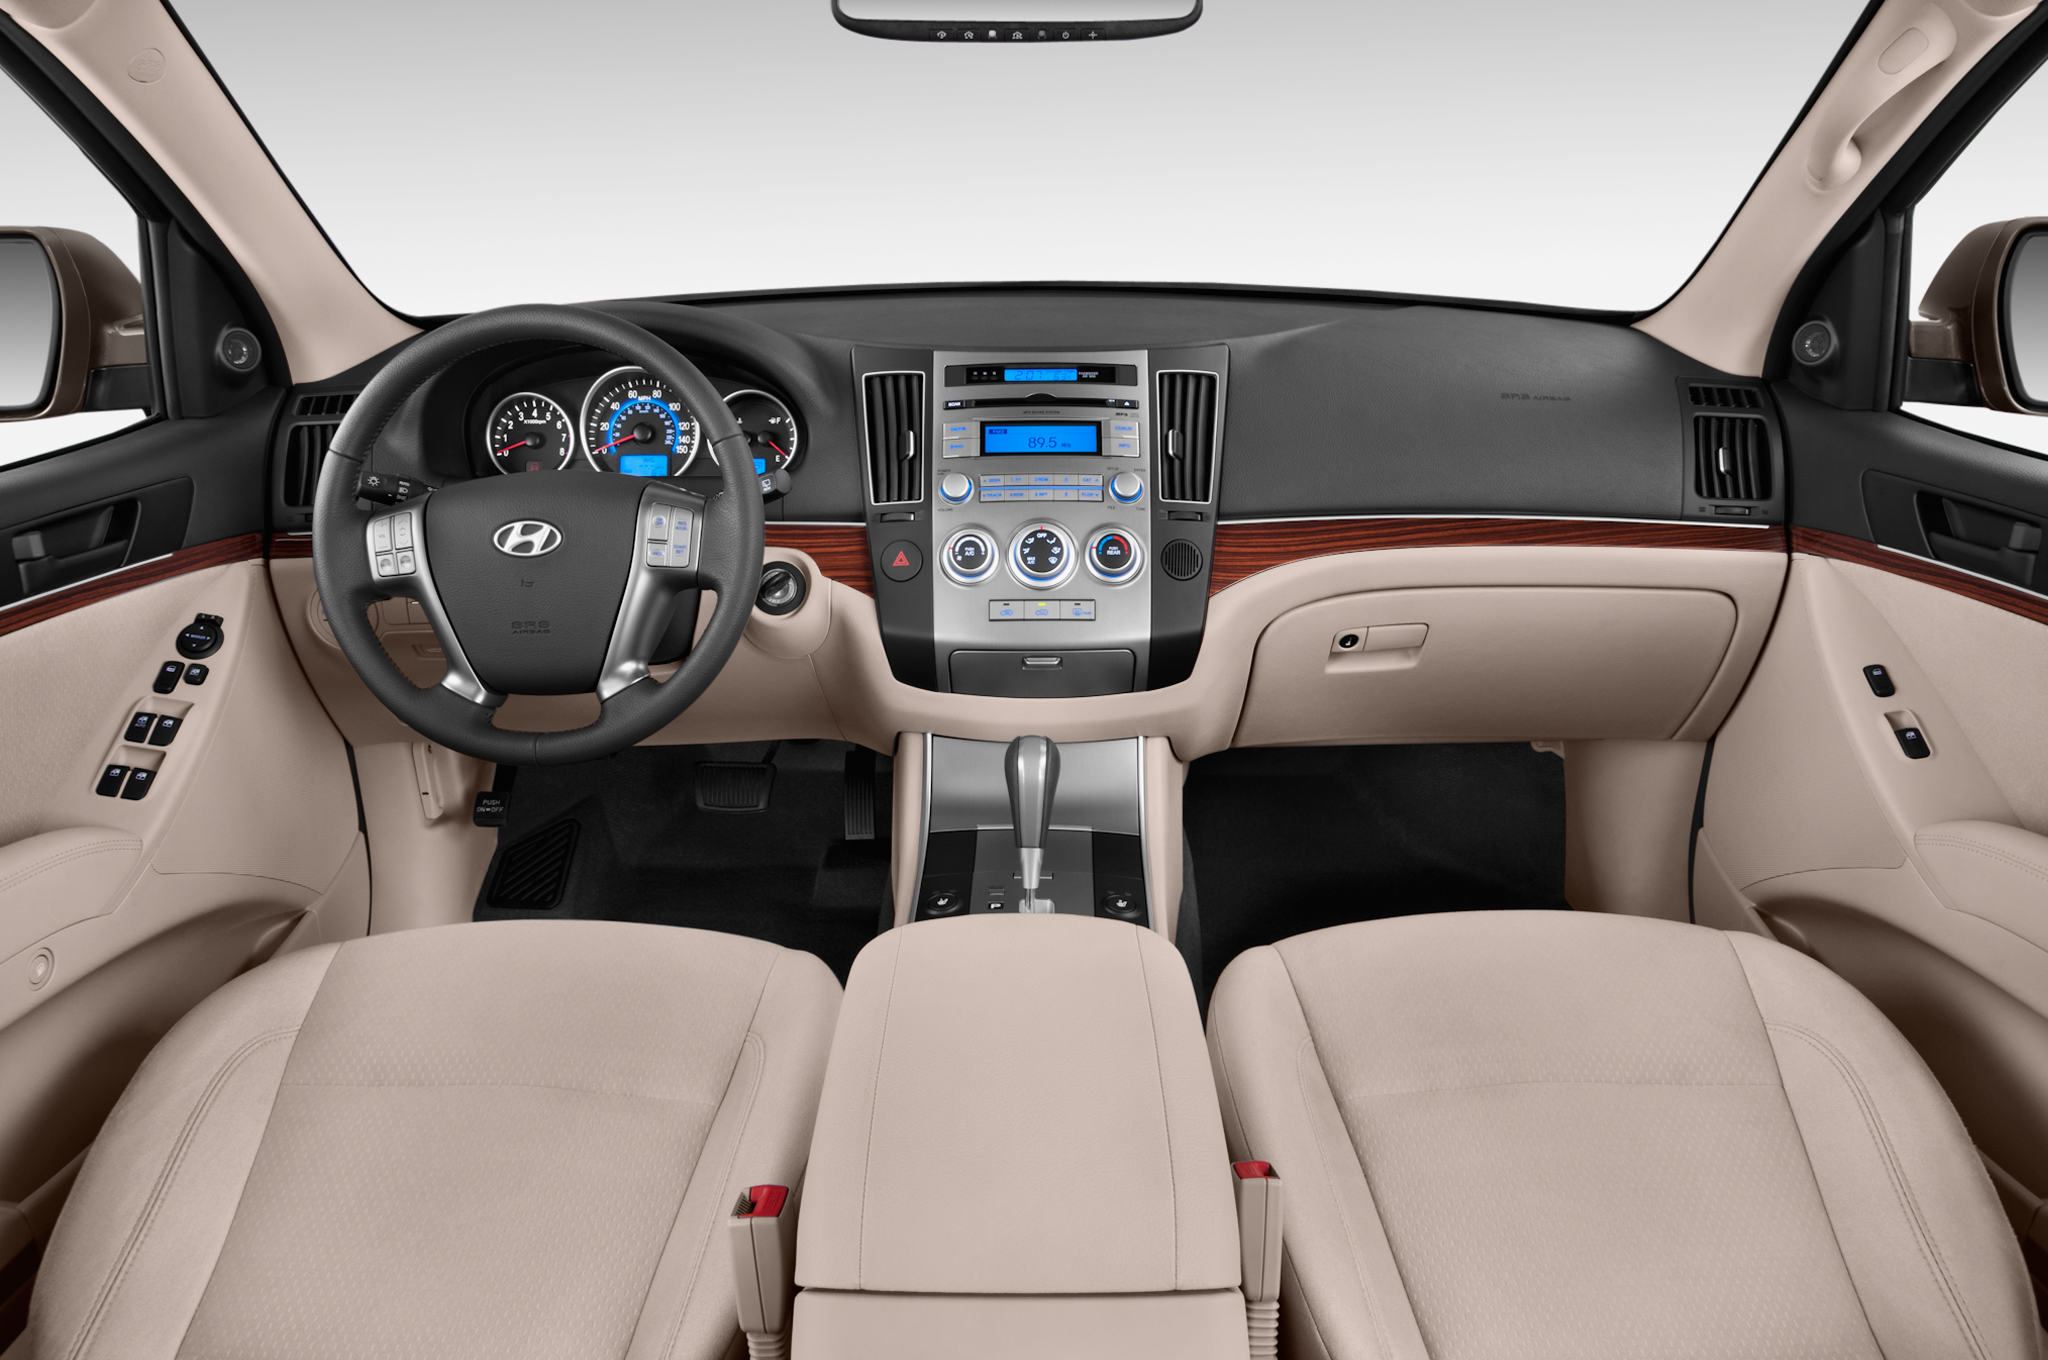 Hyundai Veracruz 2006 - 2015 SUV 5 door #3